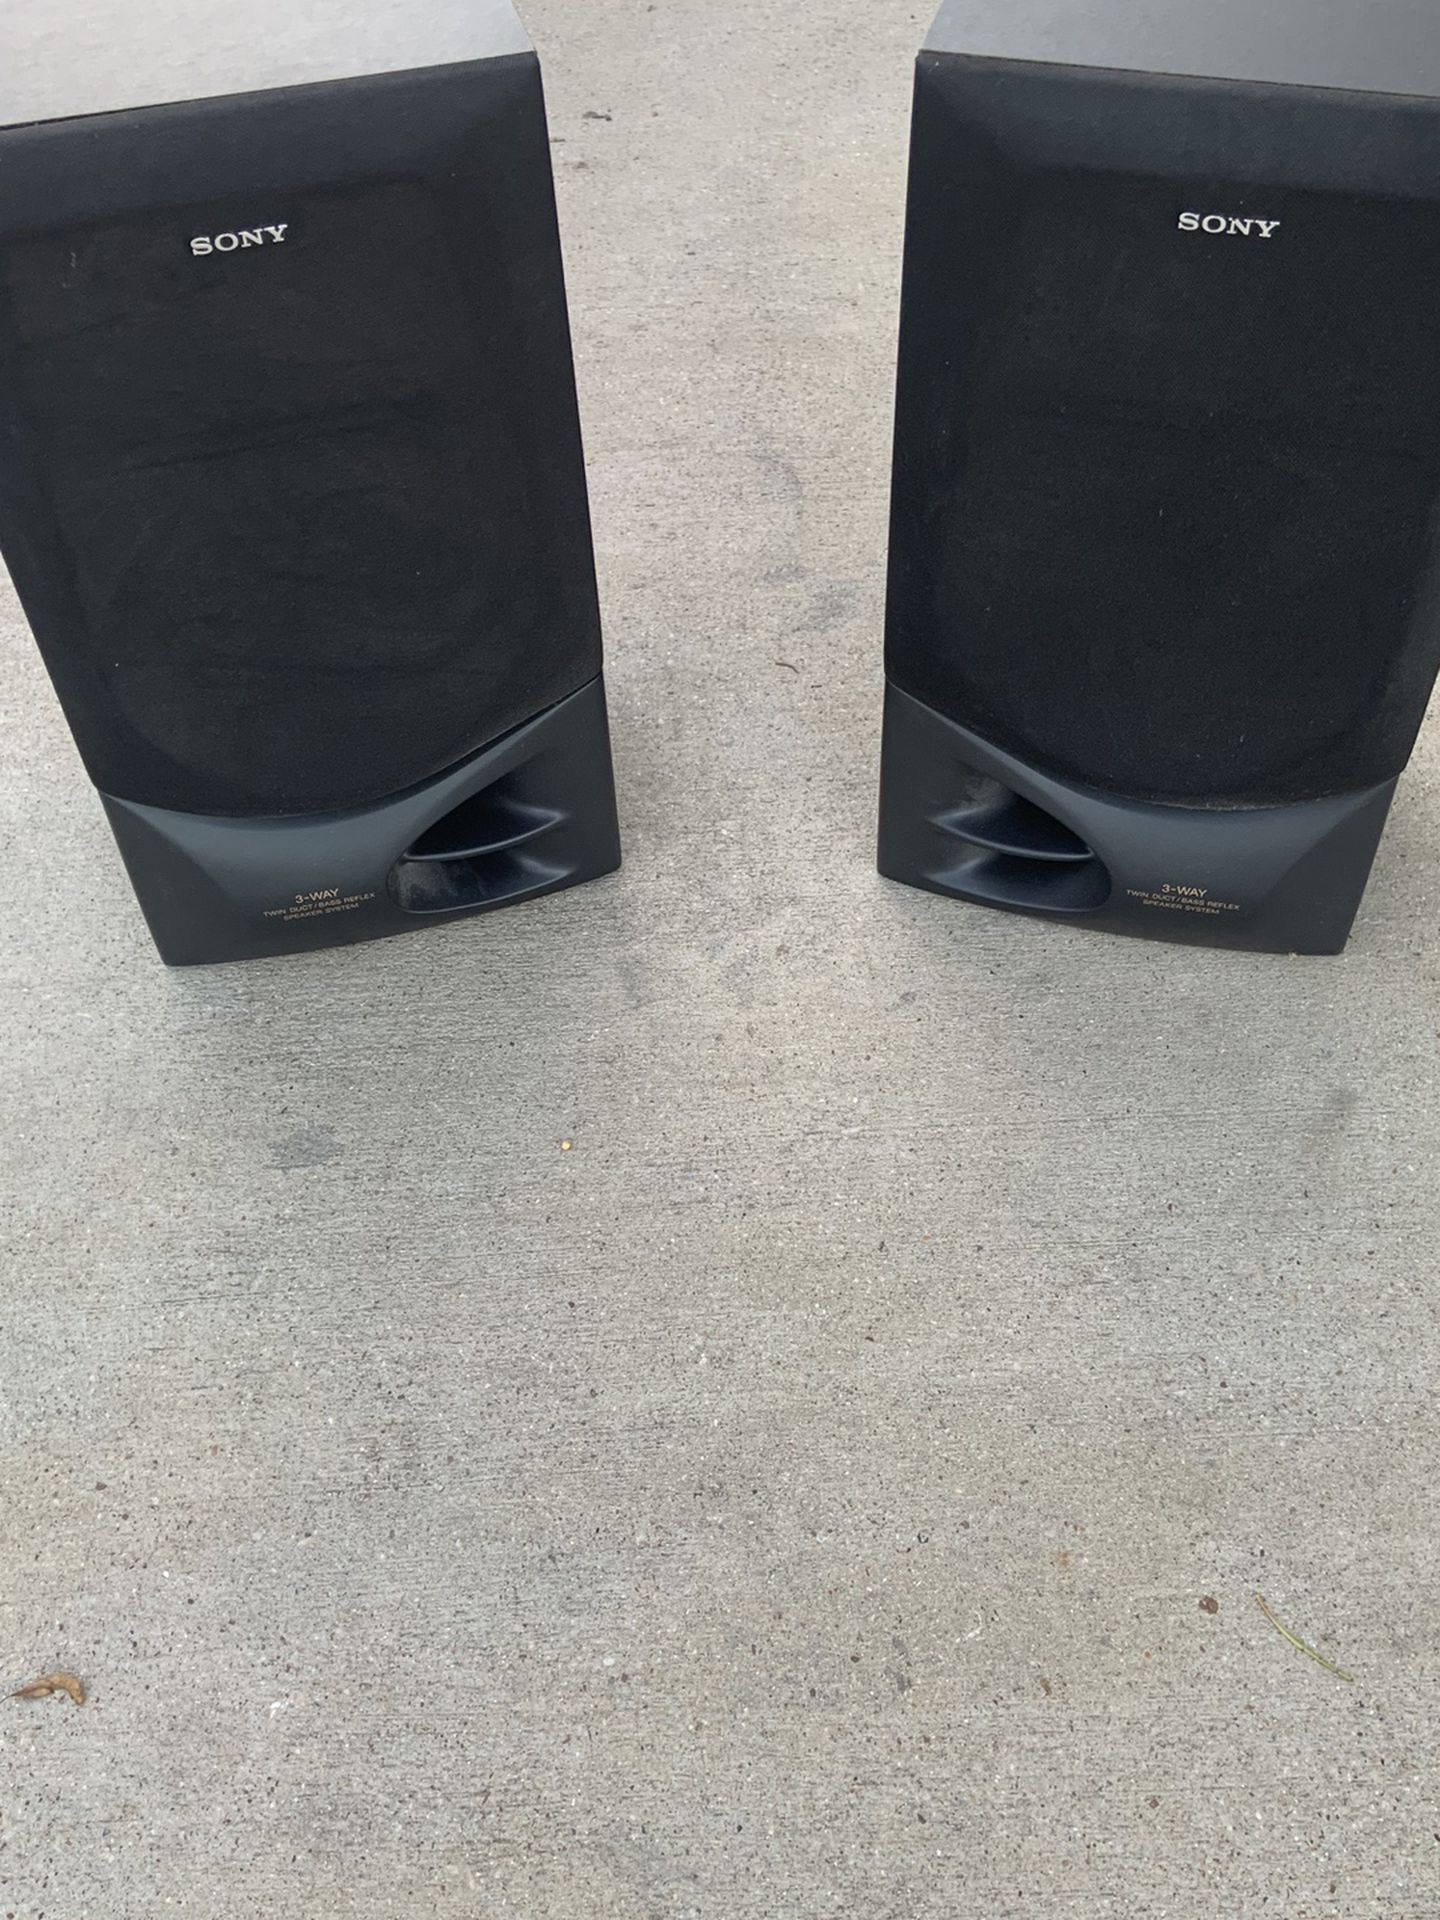 Ærlighed Begrænsninger blæse hul SONY 3 Way Speaker System. Model SSD 560. for Sale in Arlington, TX -  OfferUp